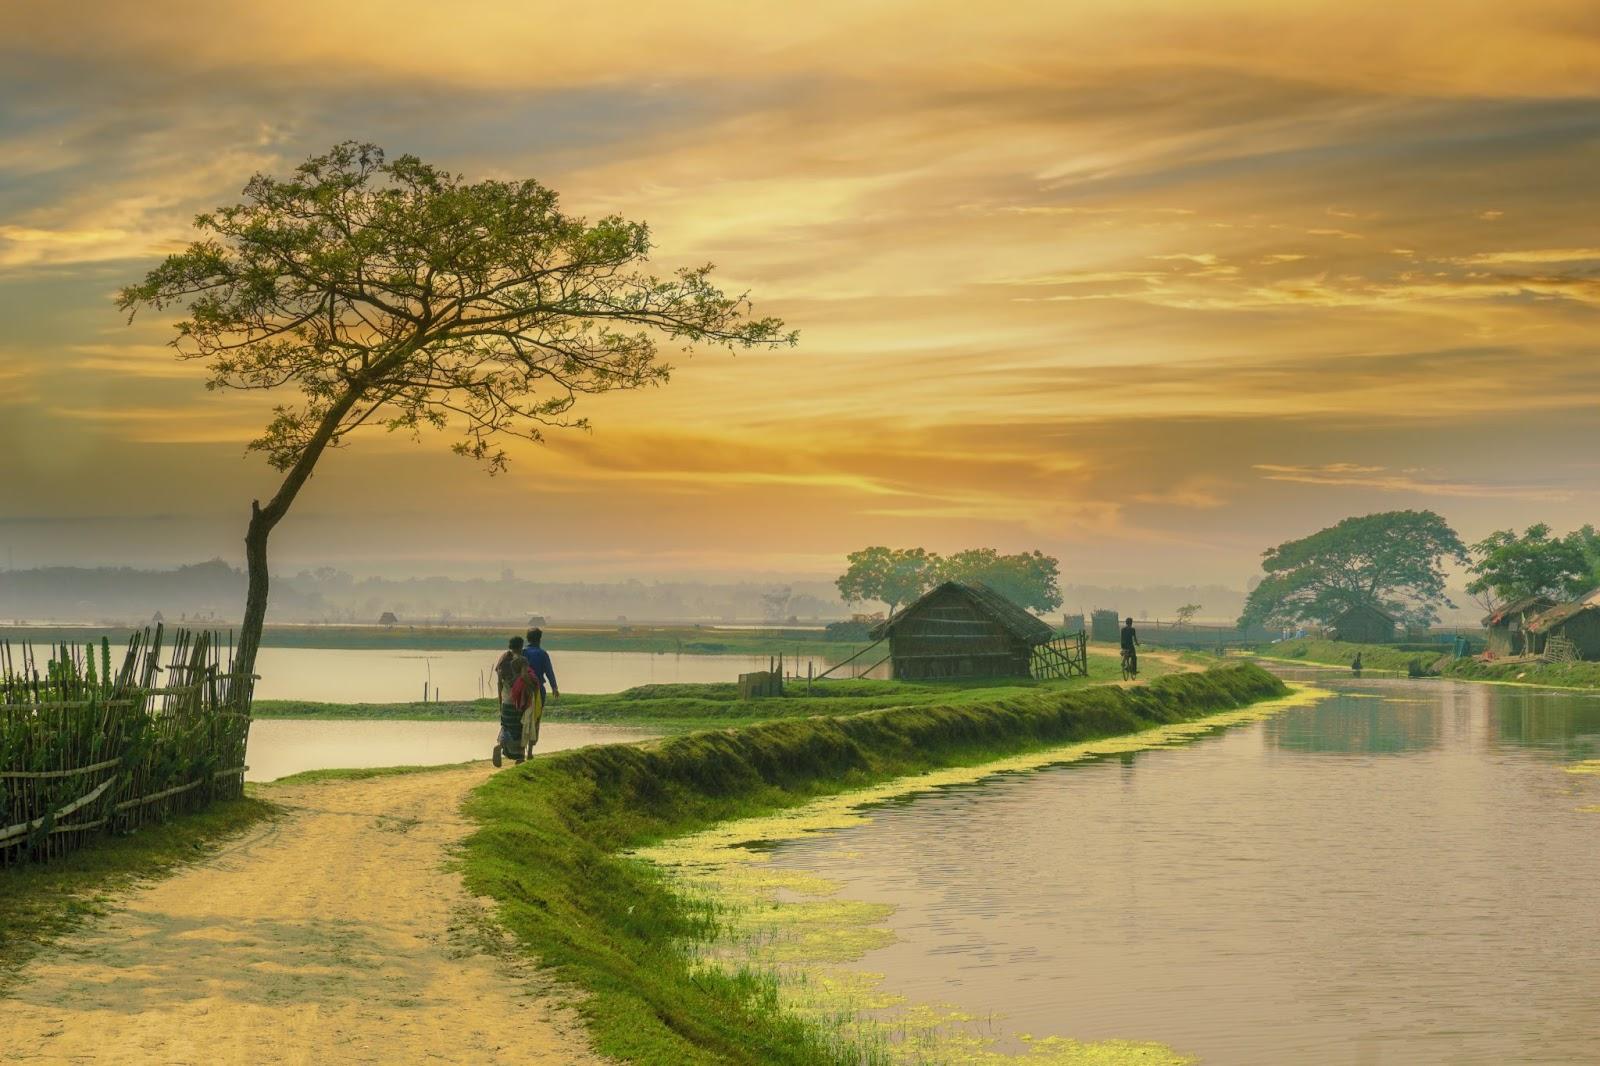 village in Bangladesh during sunset